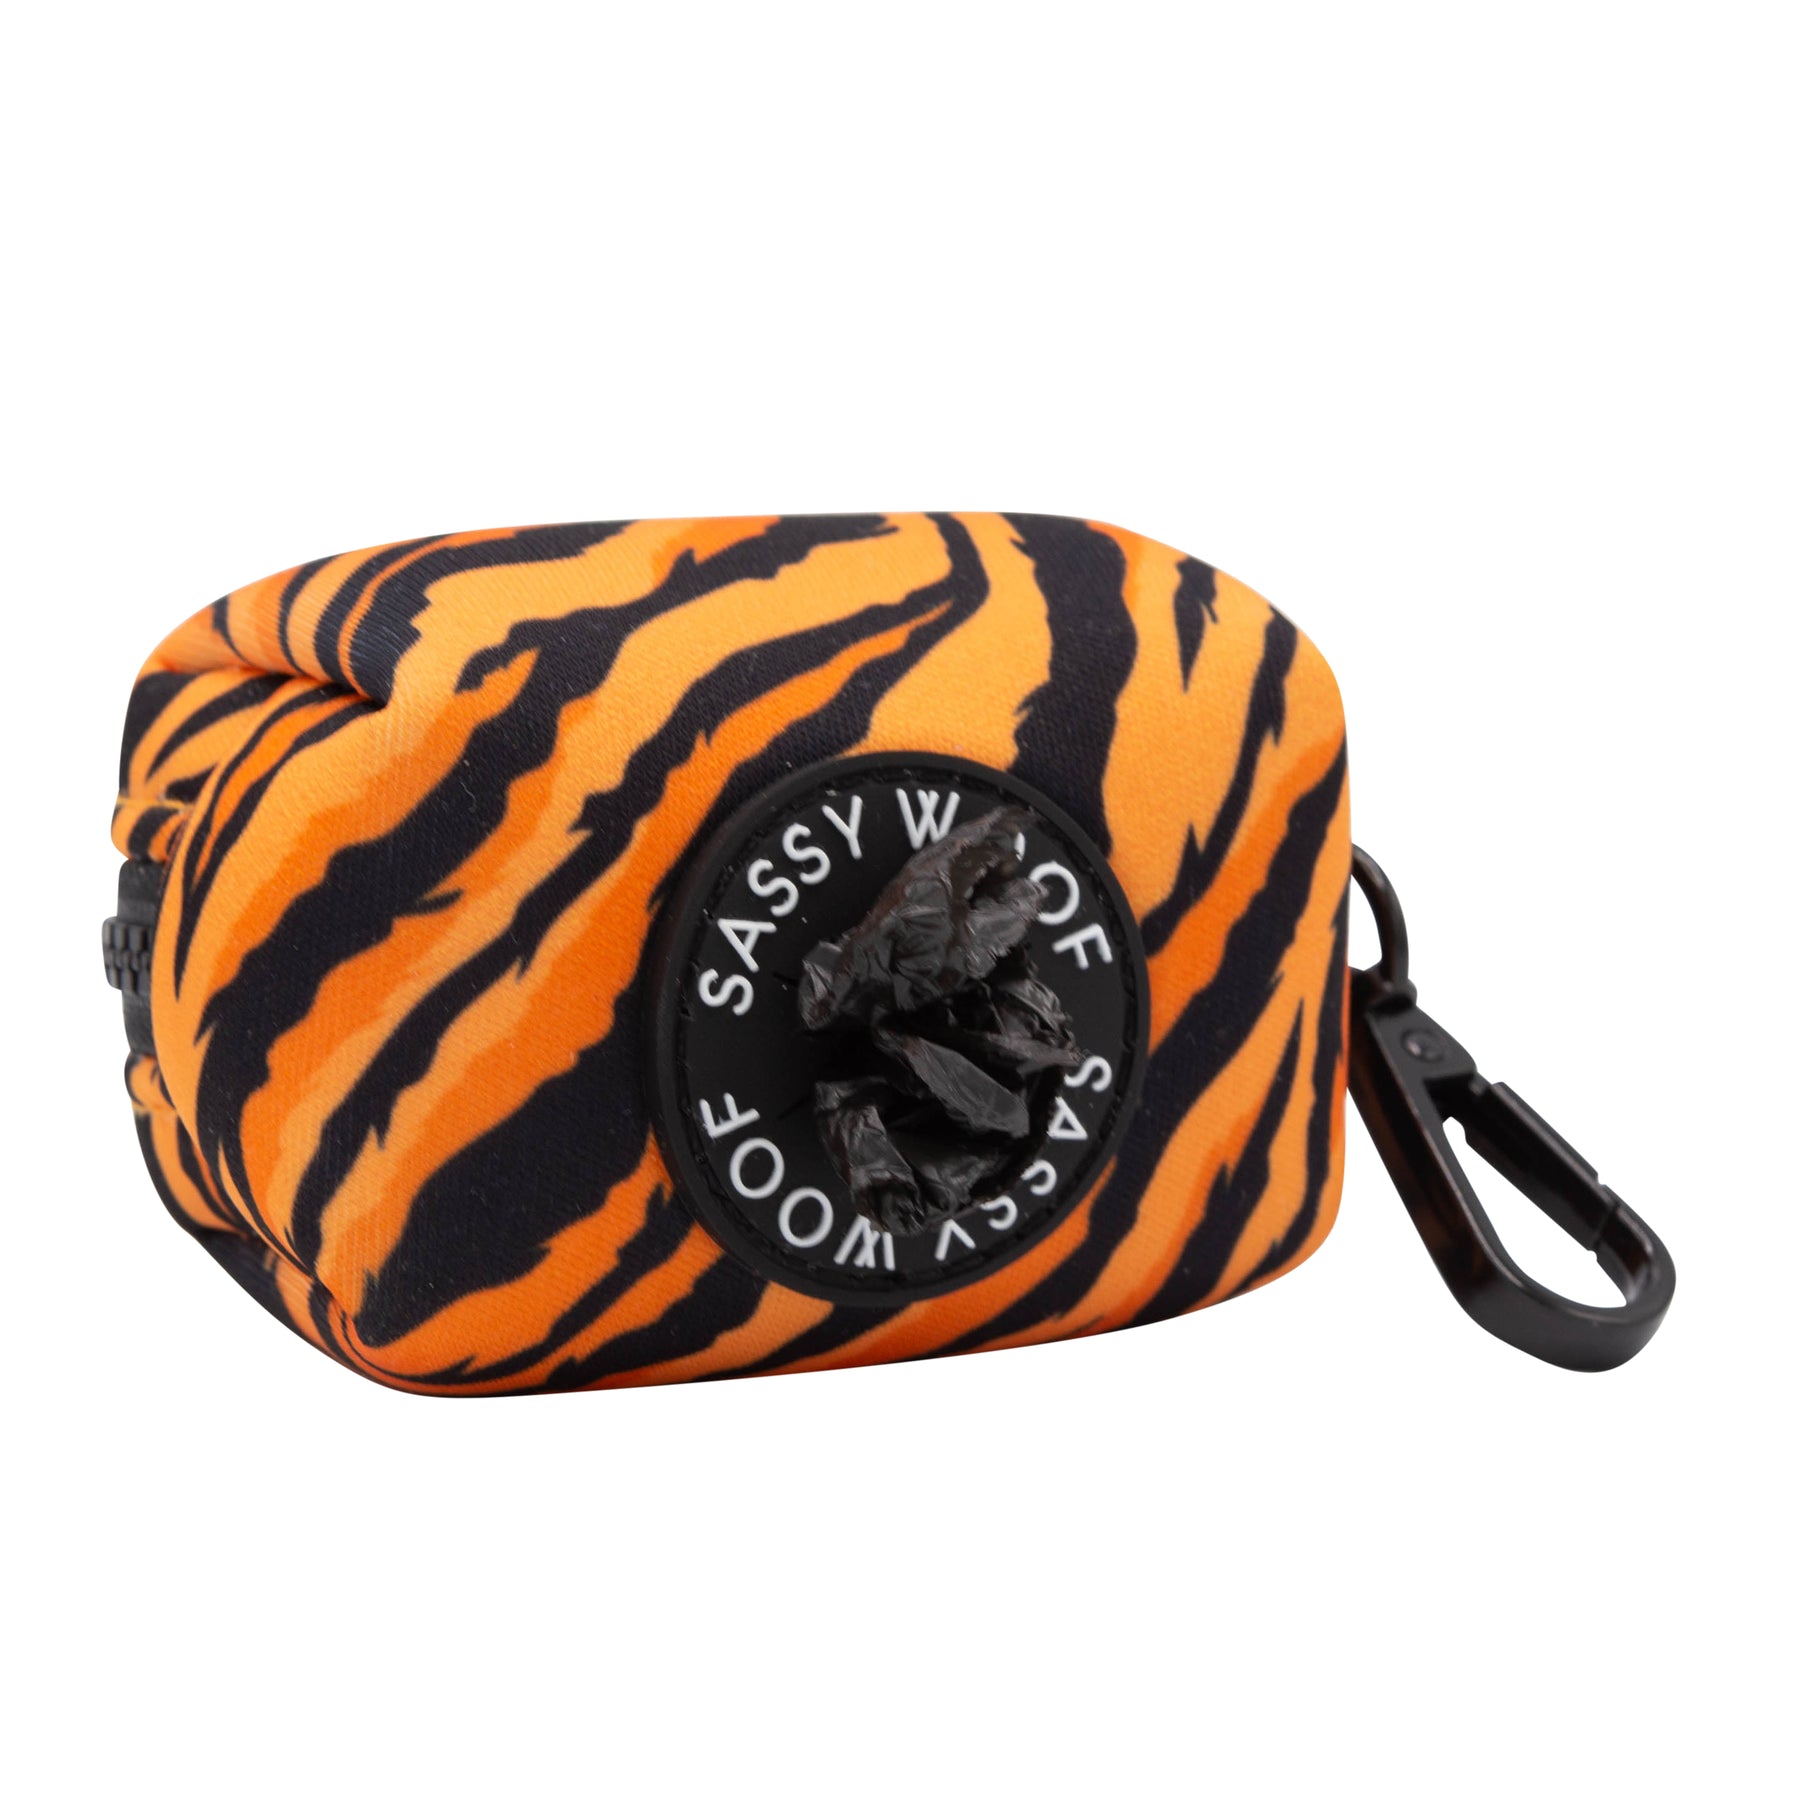 Dog Waste Bag Holder - Paw of the Tiger